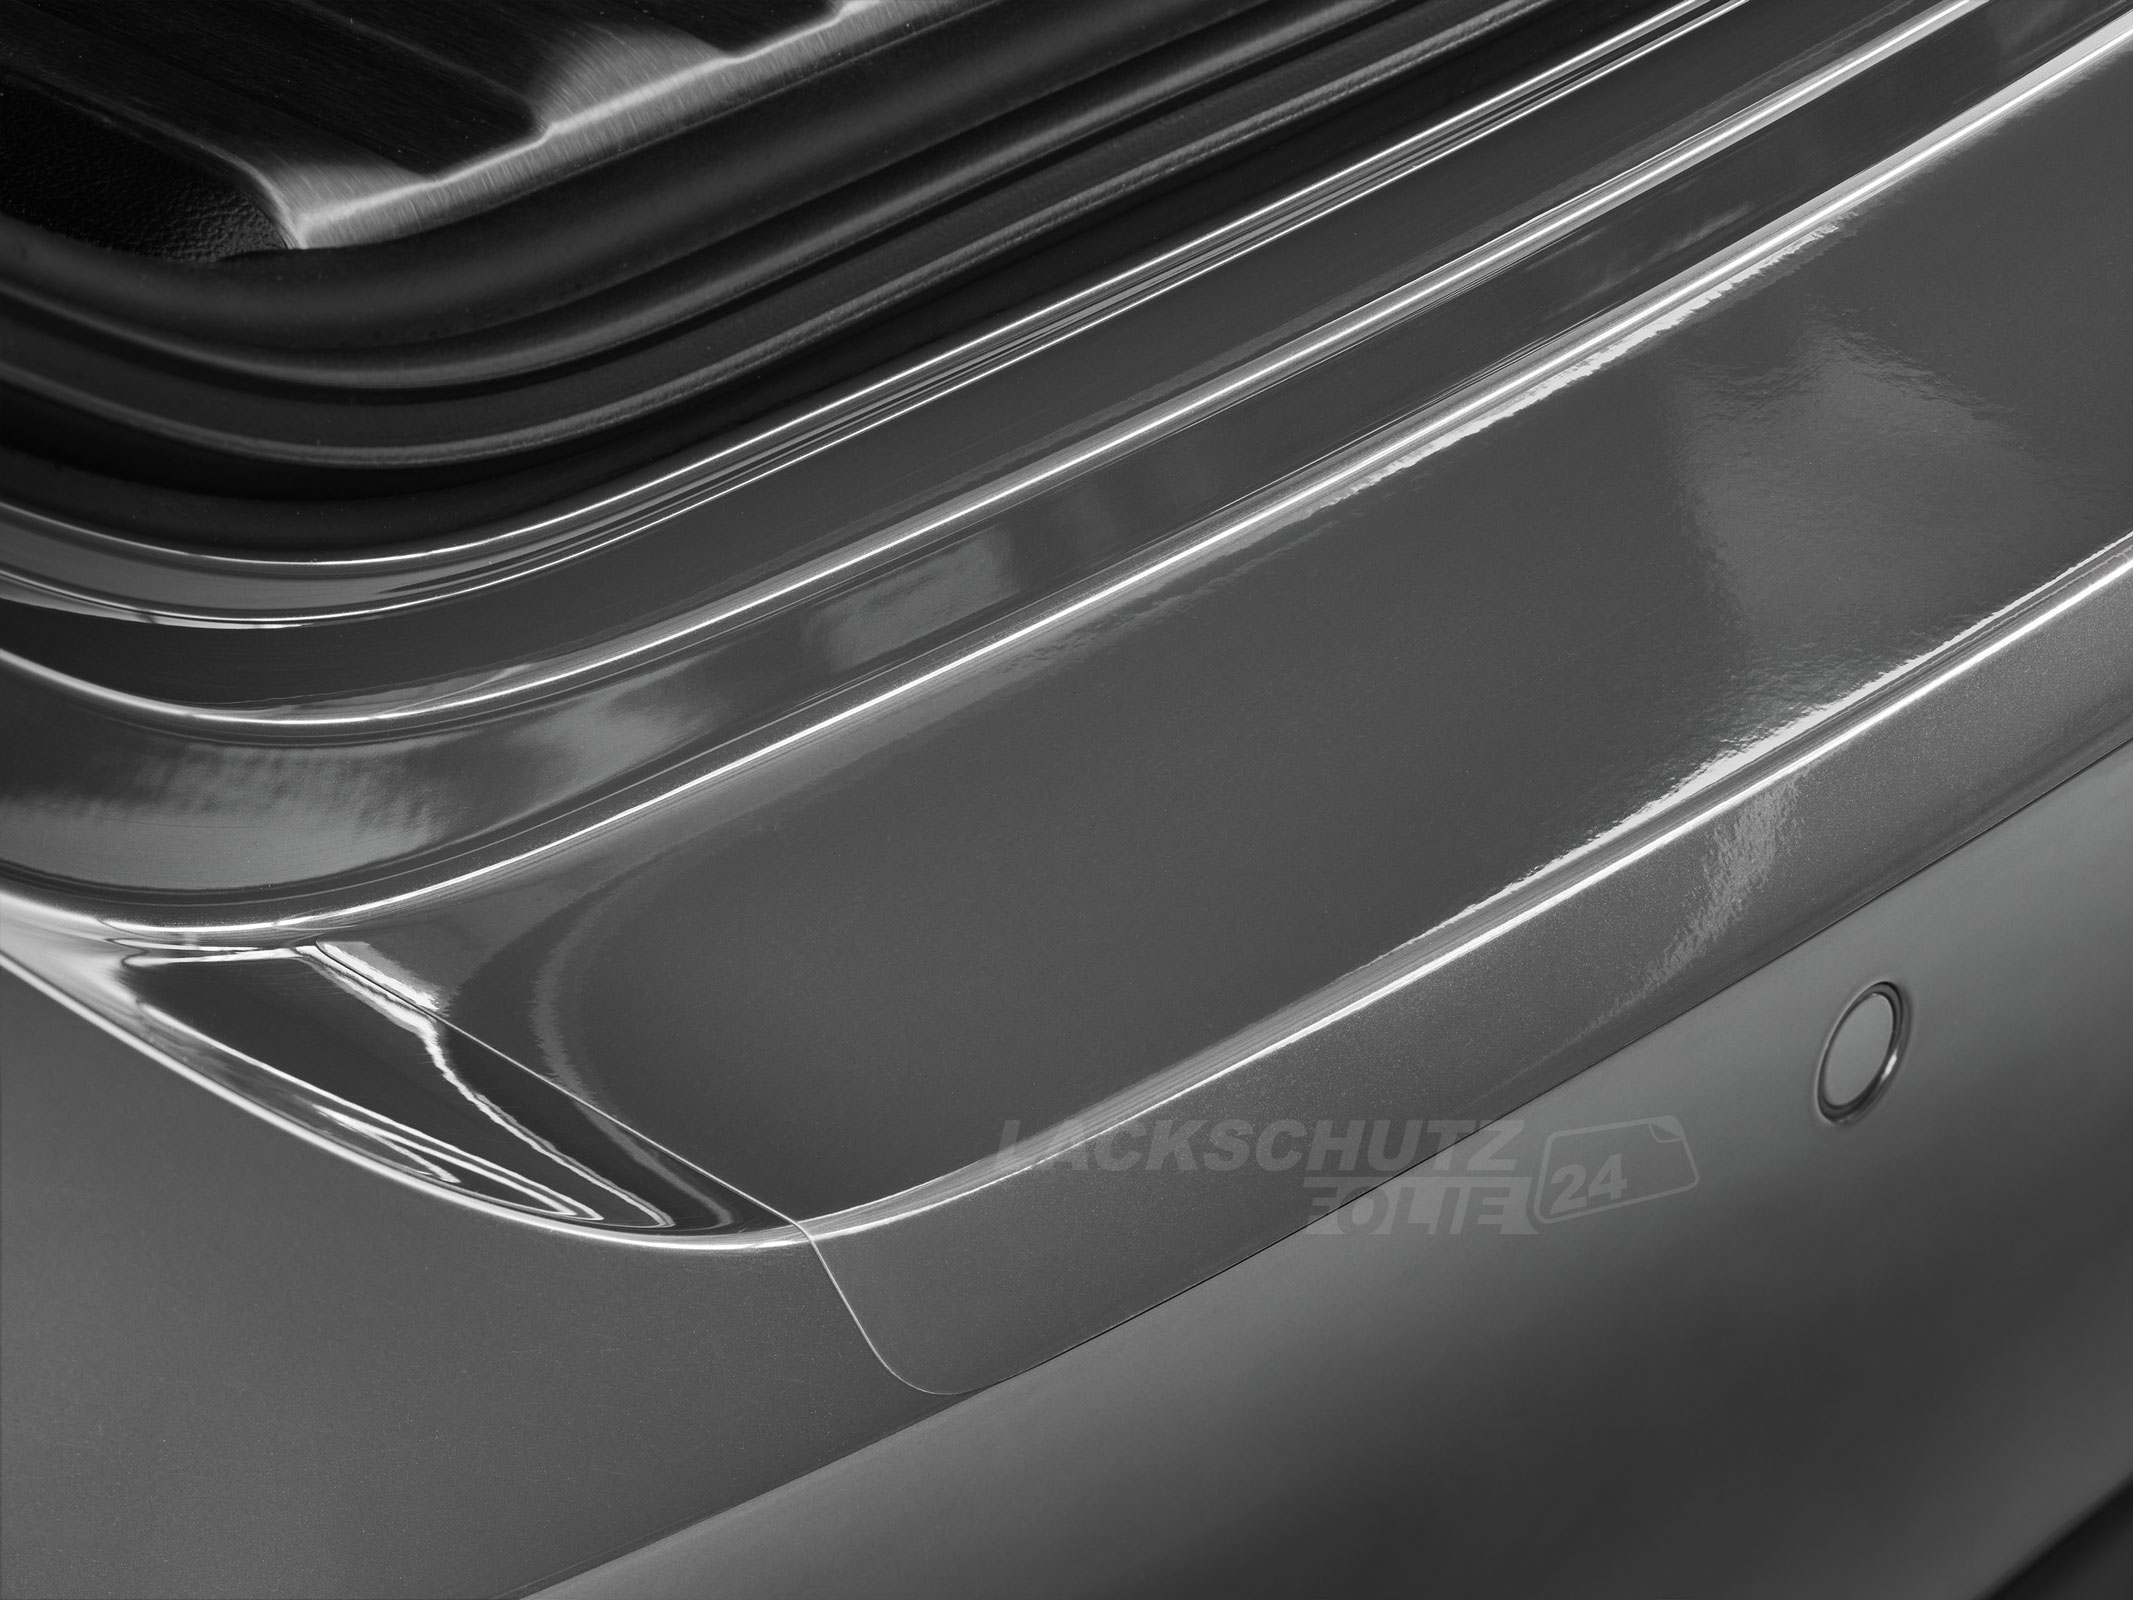 Ladekantenschutzfolie - Transparent Glatt Hochglänzend 150 µm stark für VW / Volkswagen Sharan (II), Typ 7N, ab BJ 09/2010 + Facelift